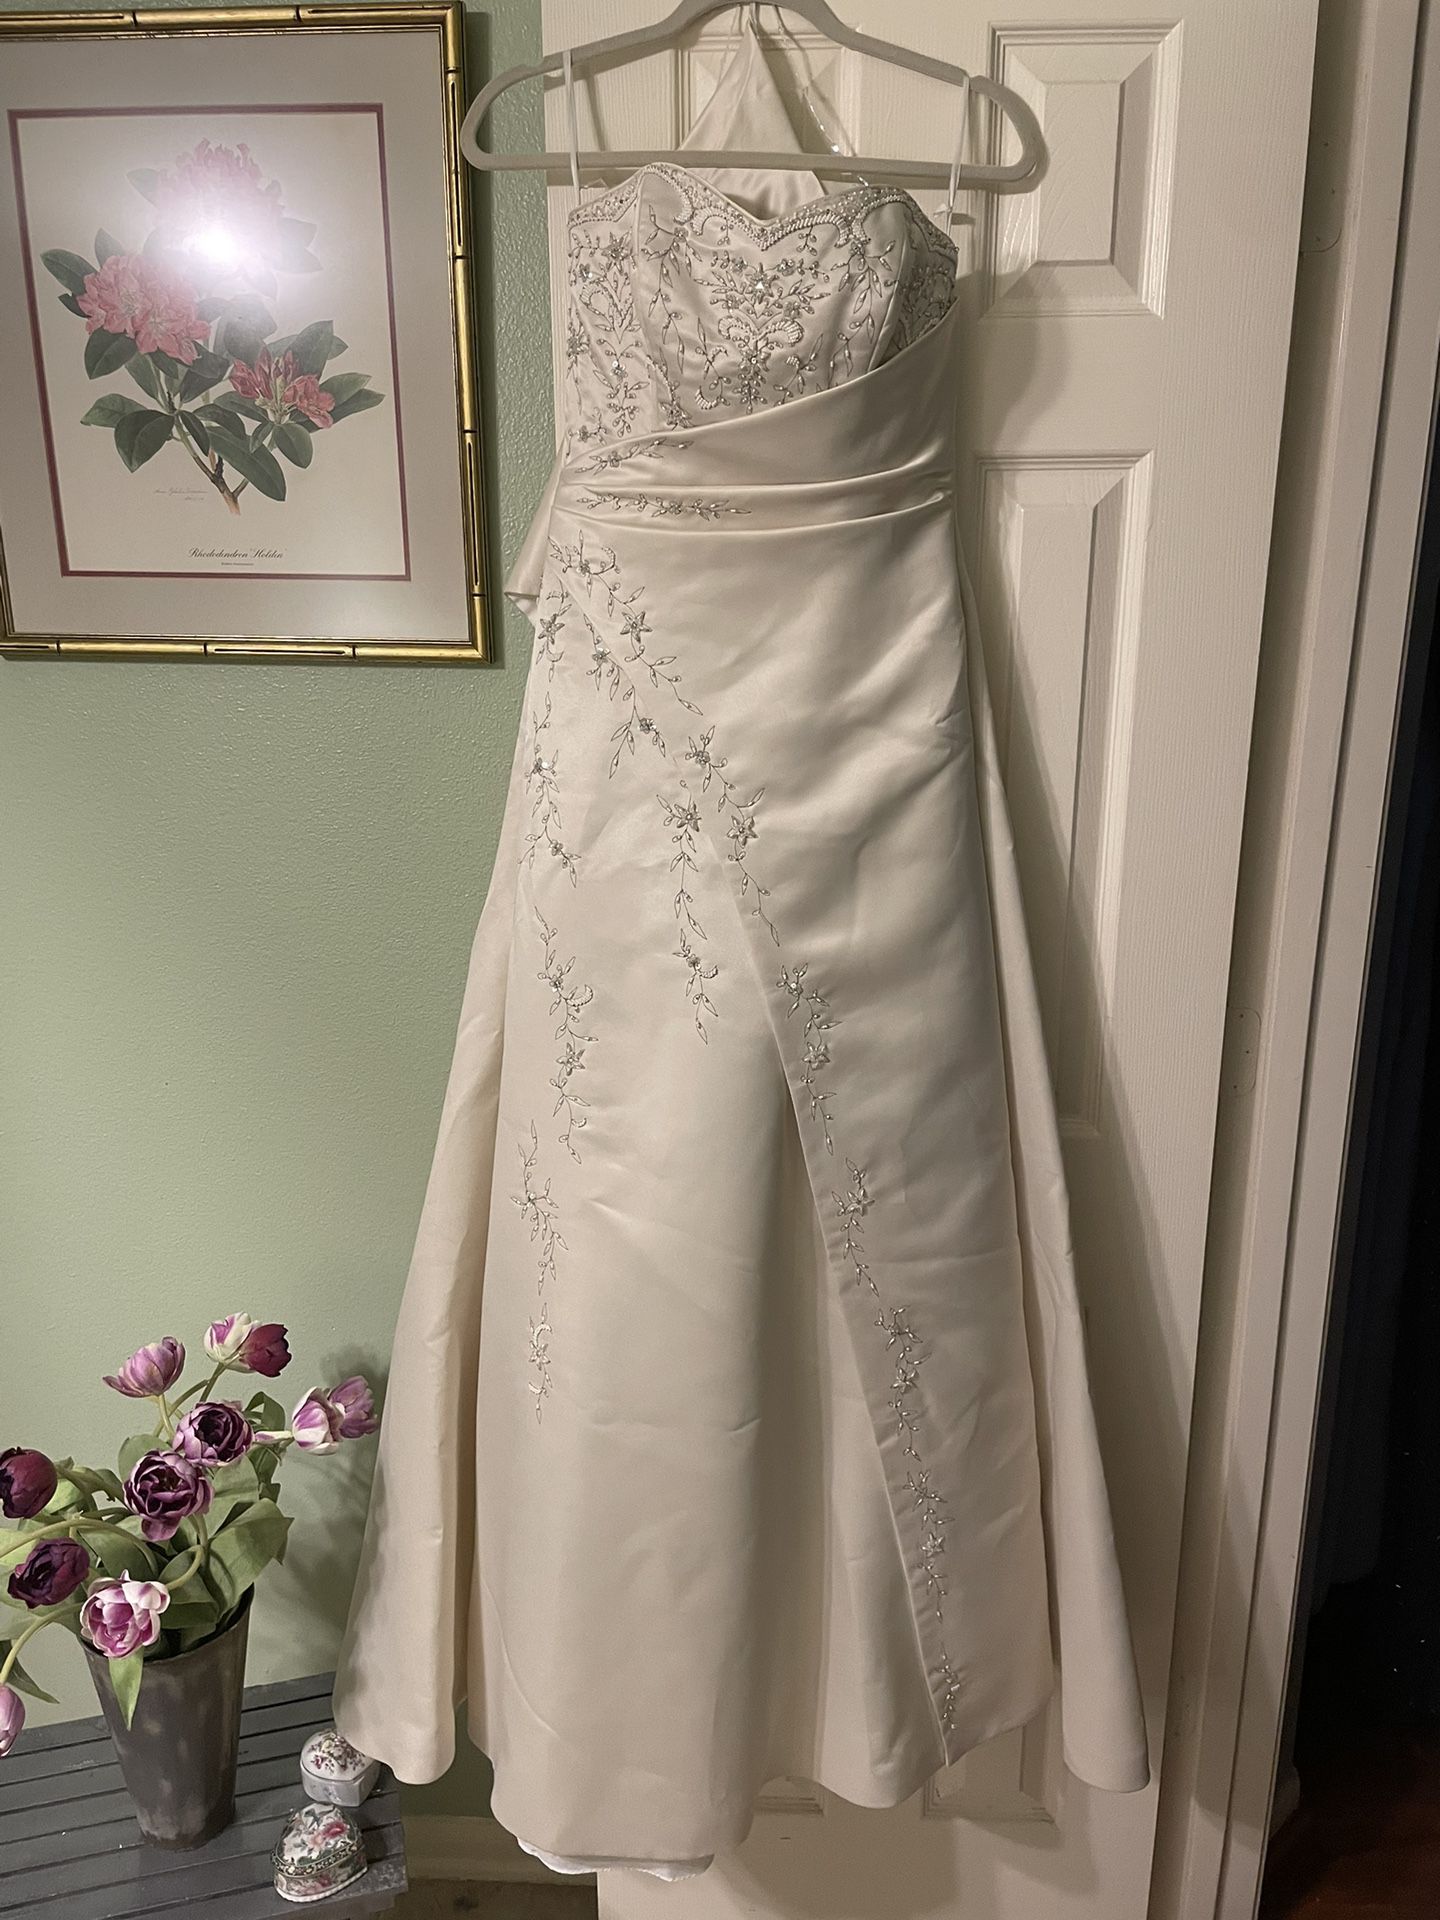 Dinah’s Wedding Dress